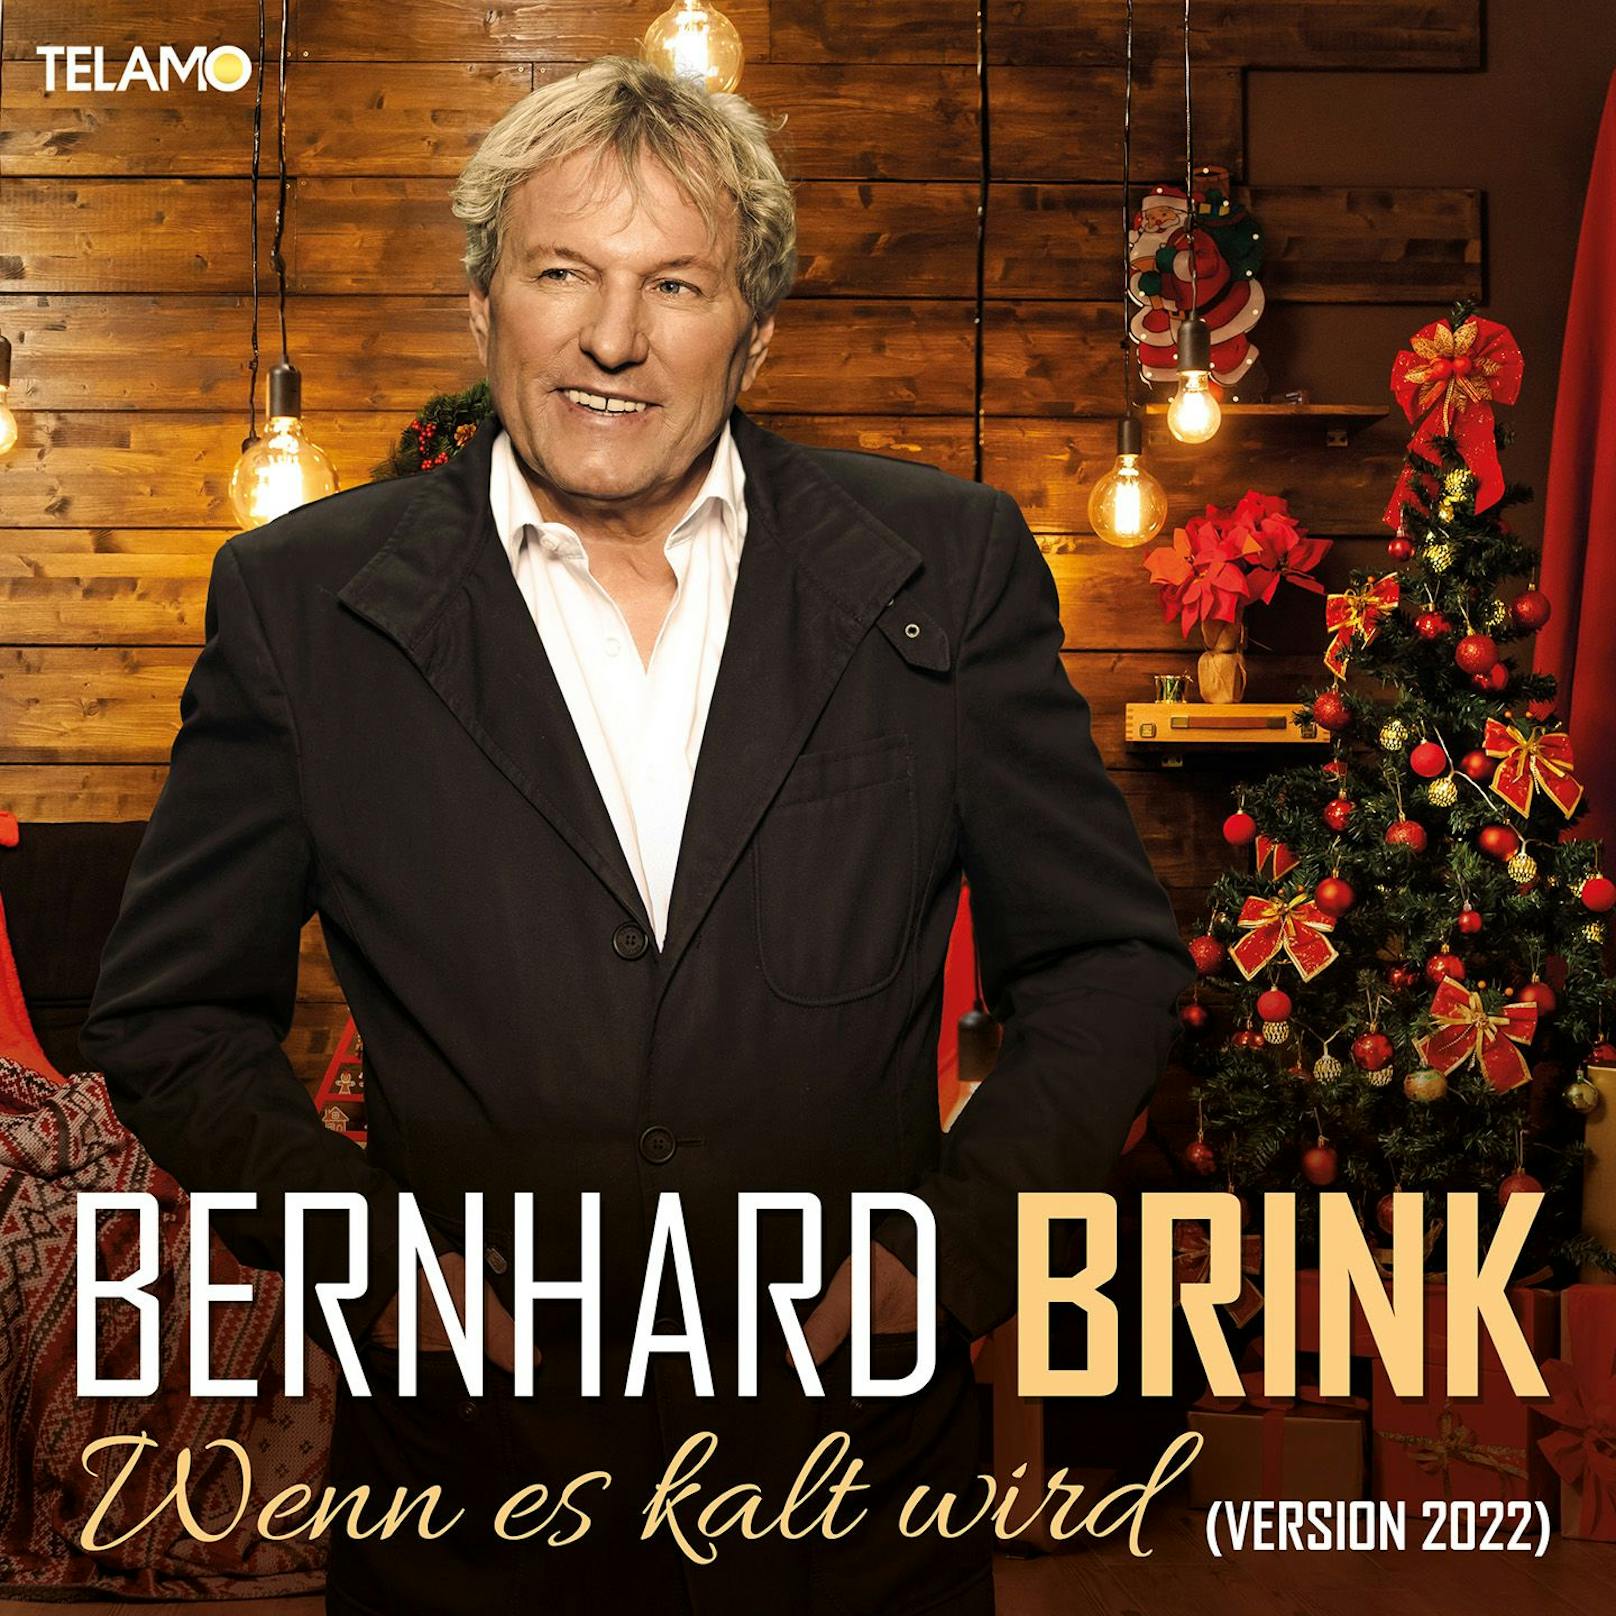 Bernhard Brink verpackt alten Hit zu Weihnachten neu